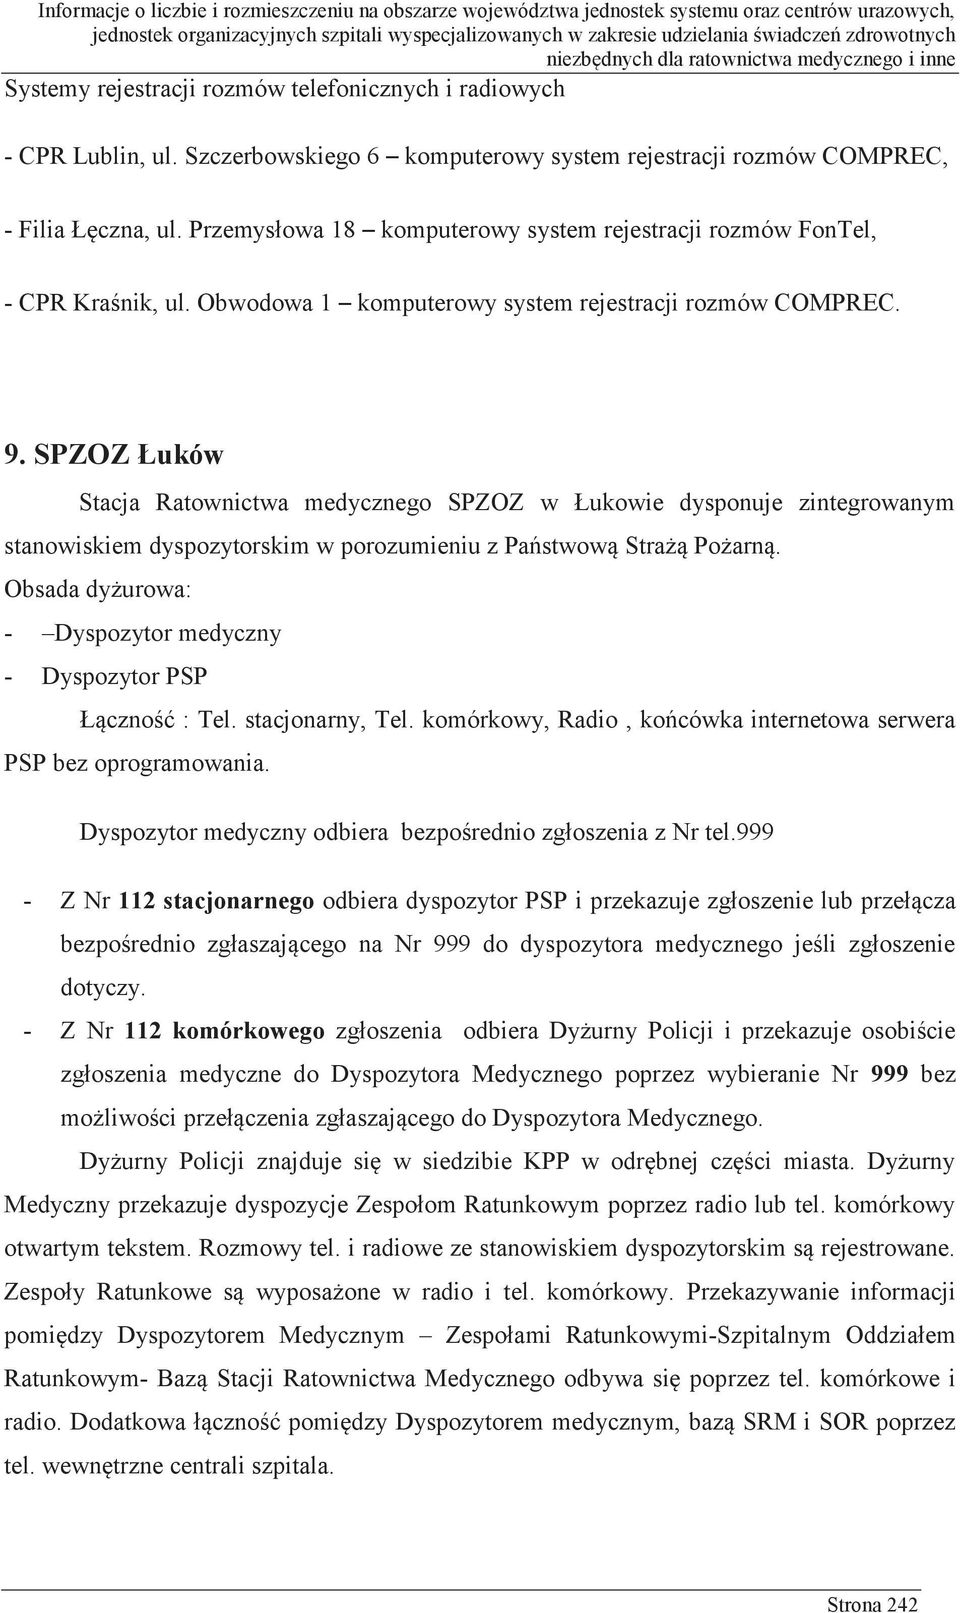 SPZOZ Łuków Stacja Ratownictwa medycznego SPZOZ w Łukowie dysponuje zintegrowanym stanowiskiem dyspozytorskim w porozumieniu z Państwową Strażą Pożarną.